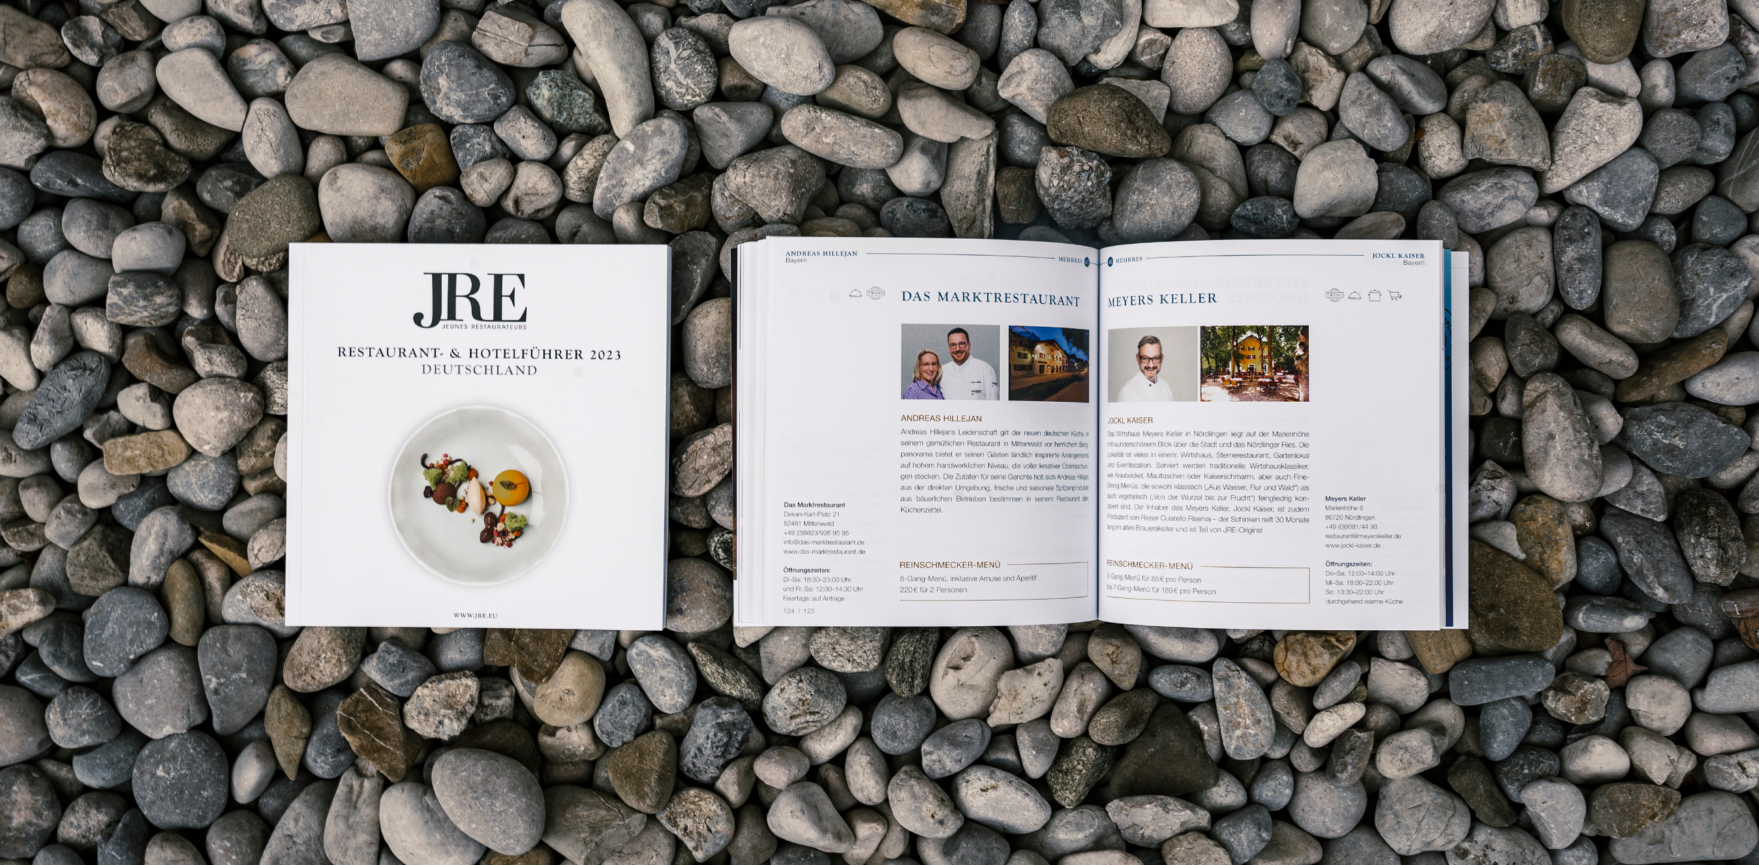 JRE-Guide jeweils mit Titelbild und offener Inhaltsseite auf Steinhintergrund